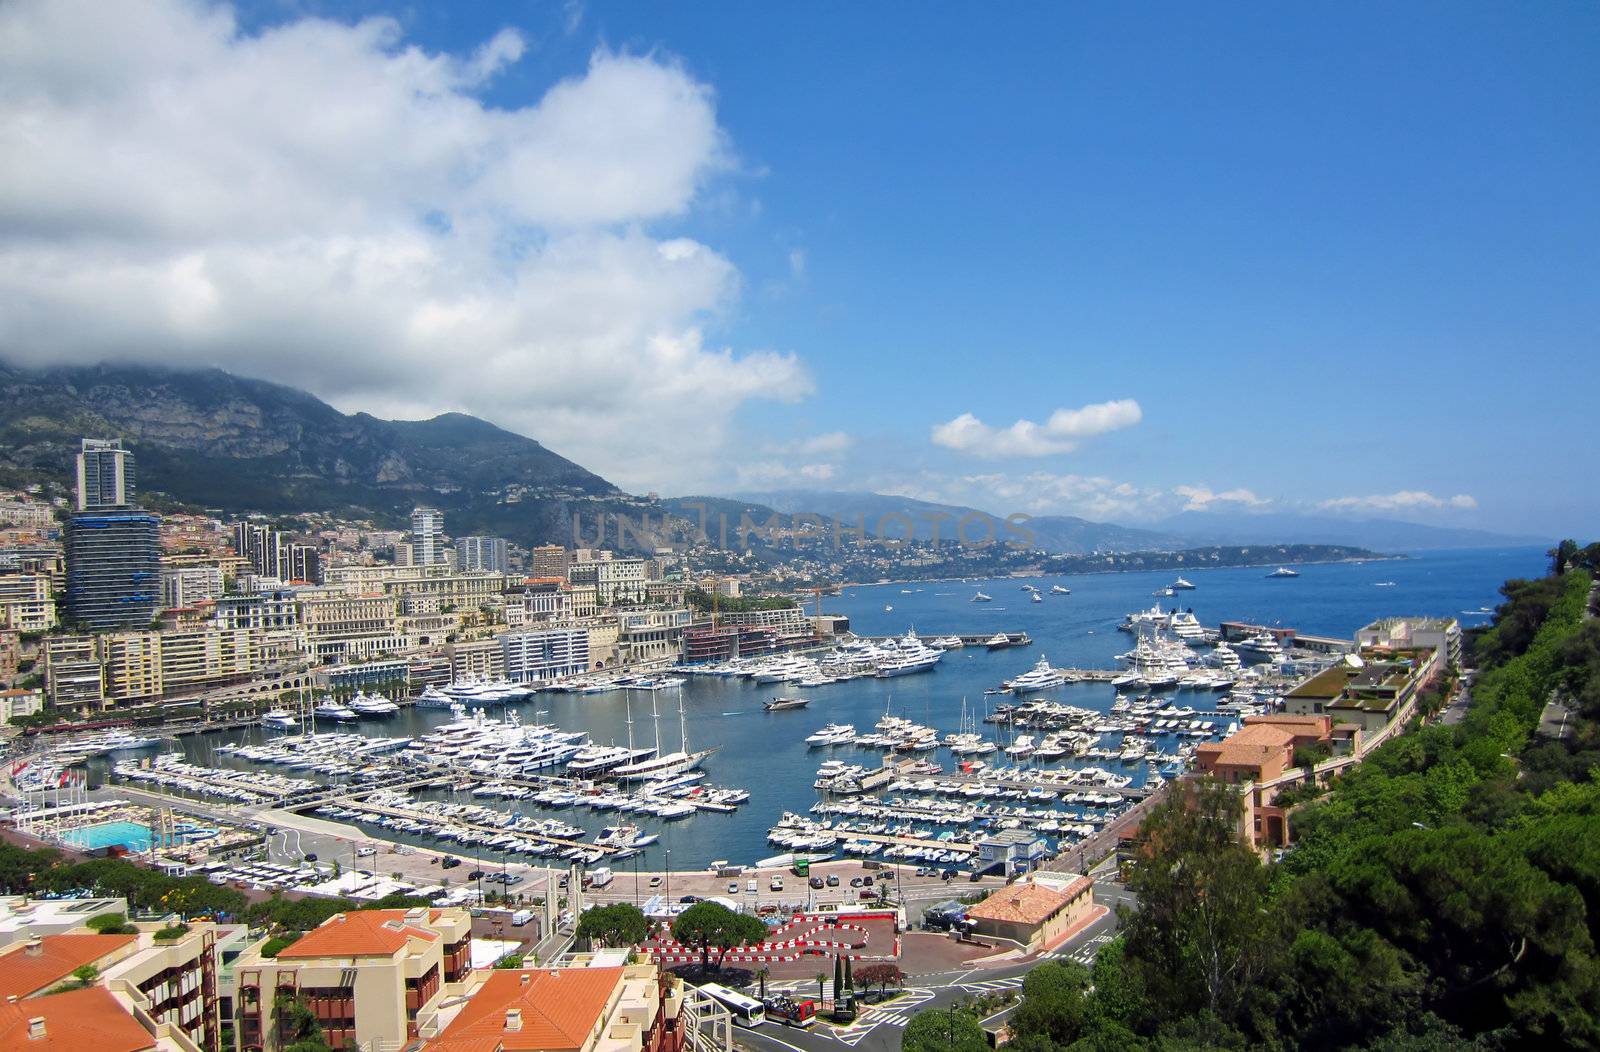 Monte Carlo in Monaco by jol66